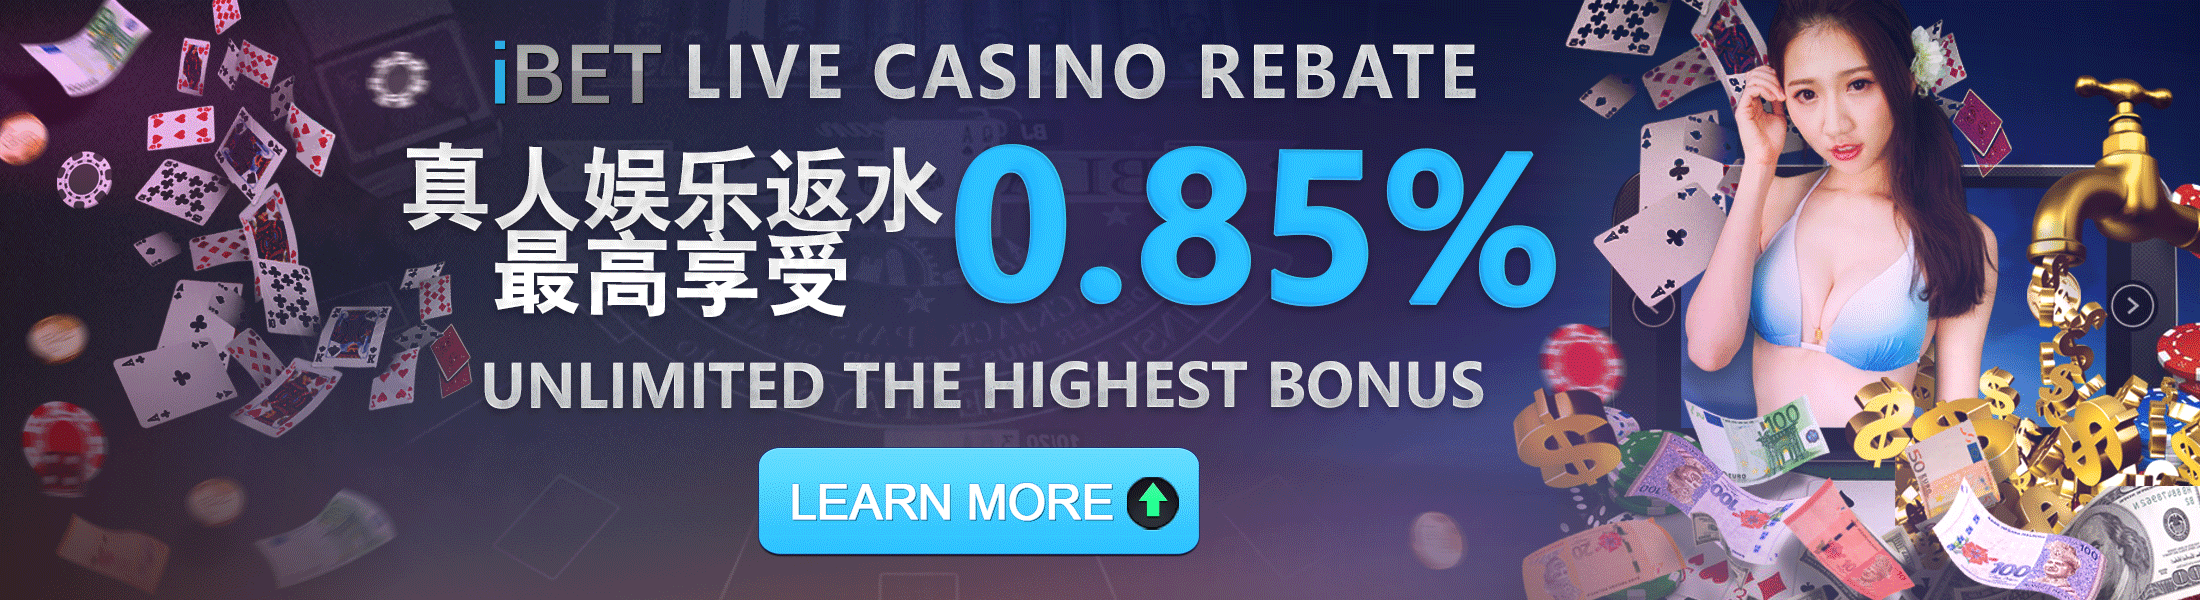 iBET Live Casino Rebate Bonus 0.75%+0.1% | Newtown Casino NTC33